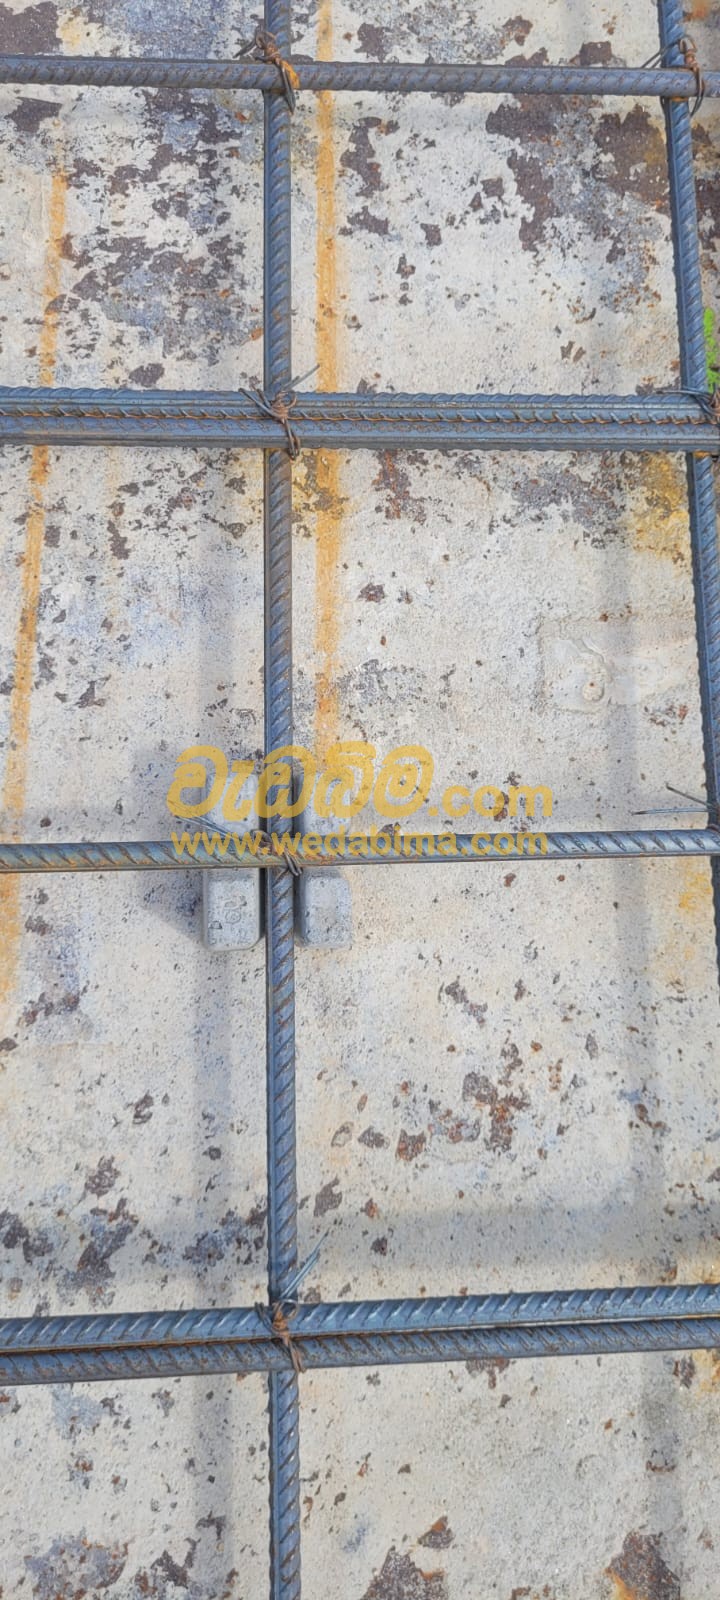 50mm concrete spacer blocks price in sri lanka